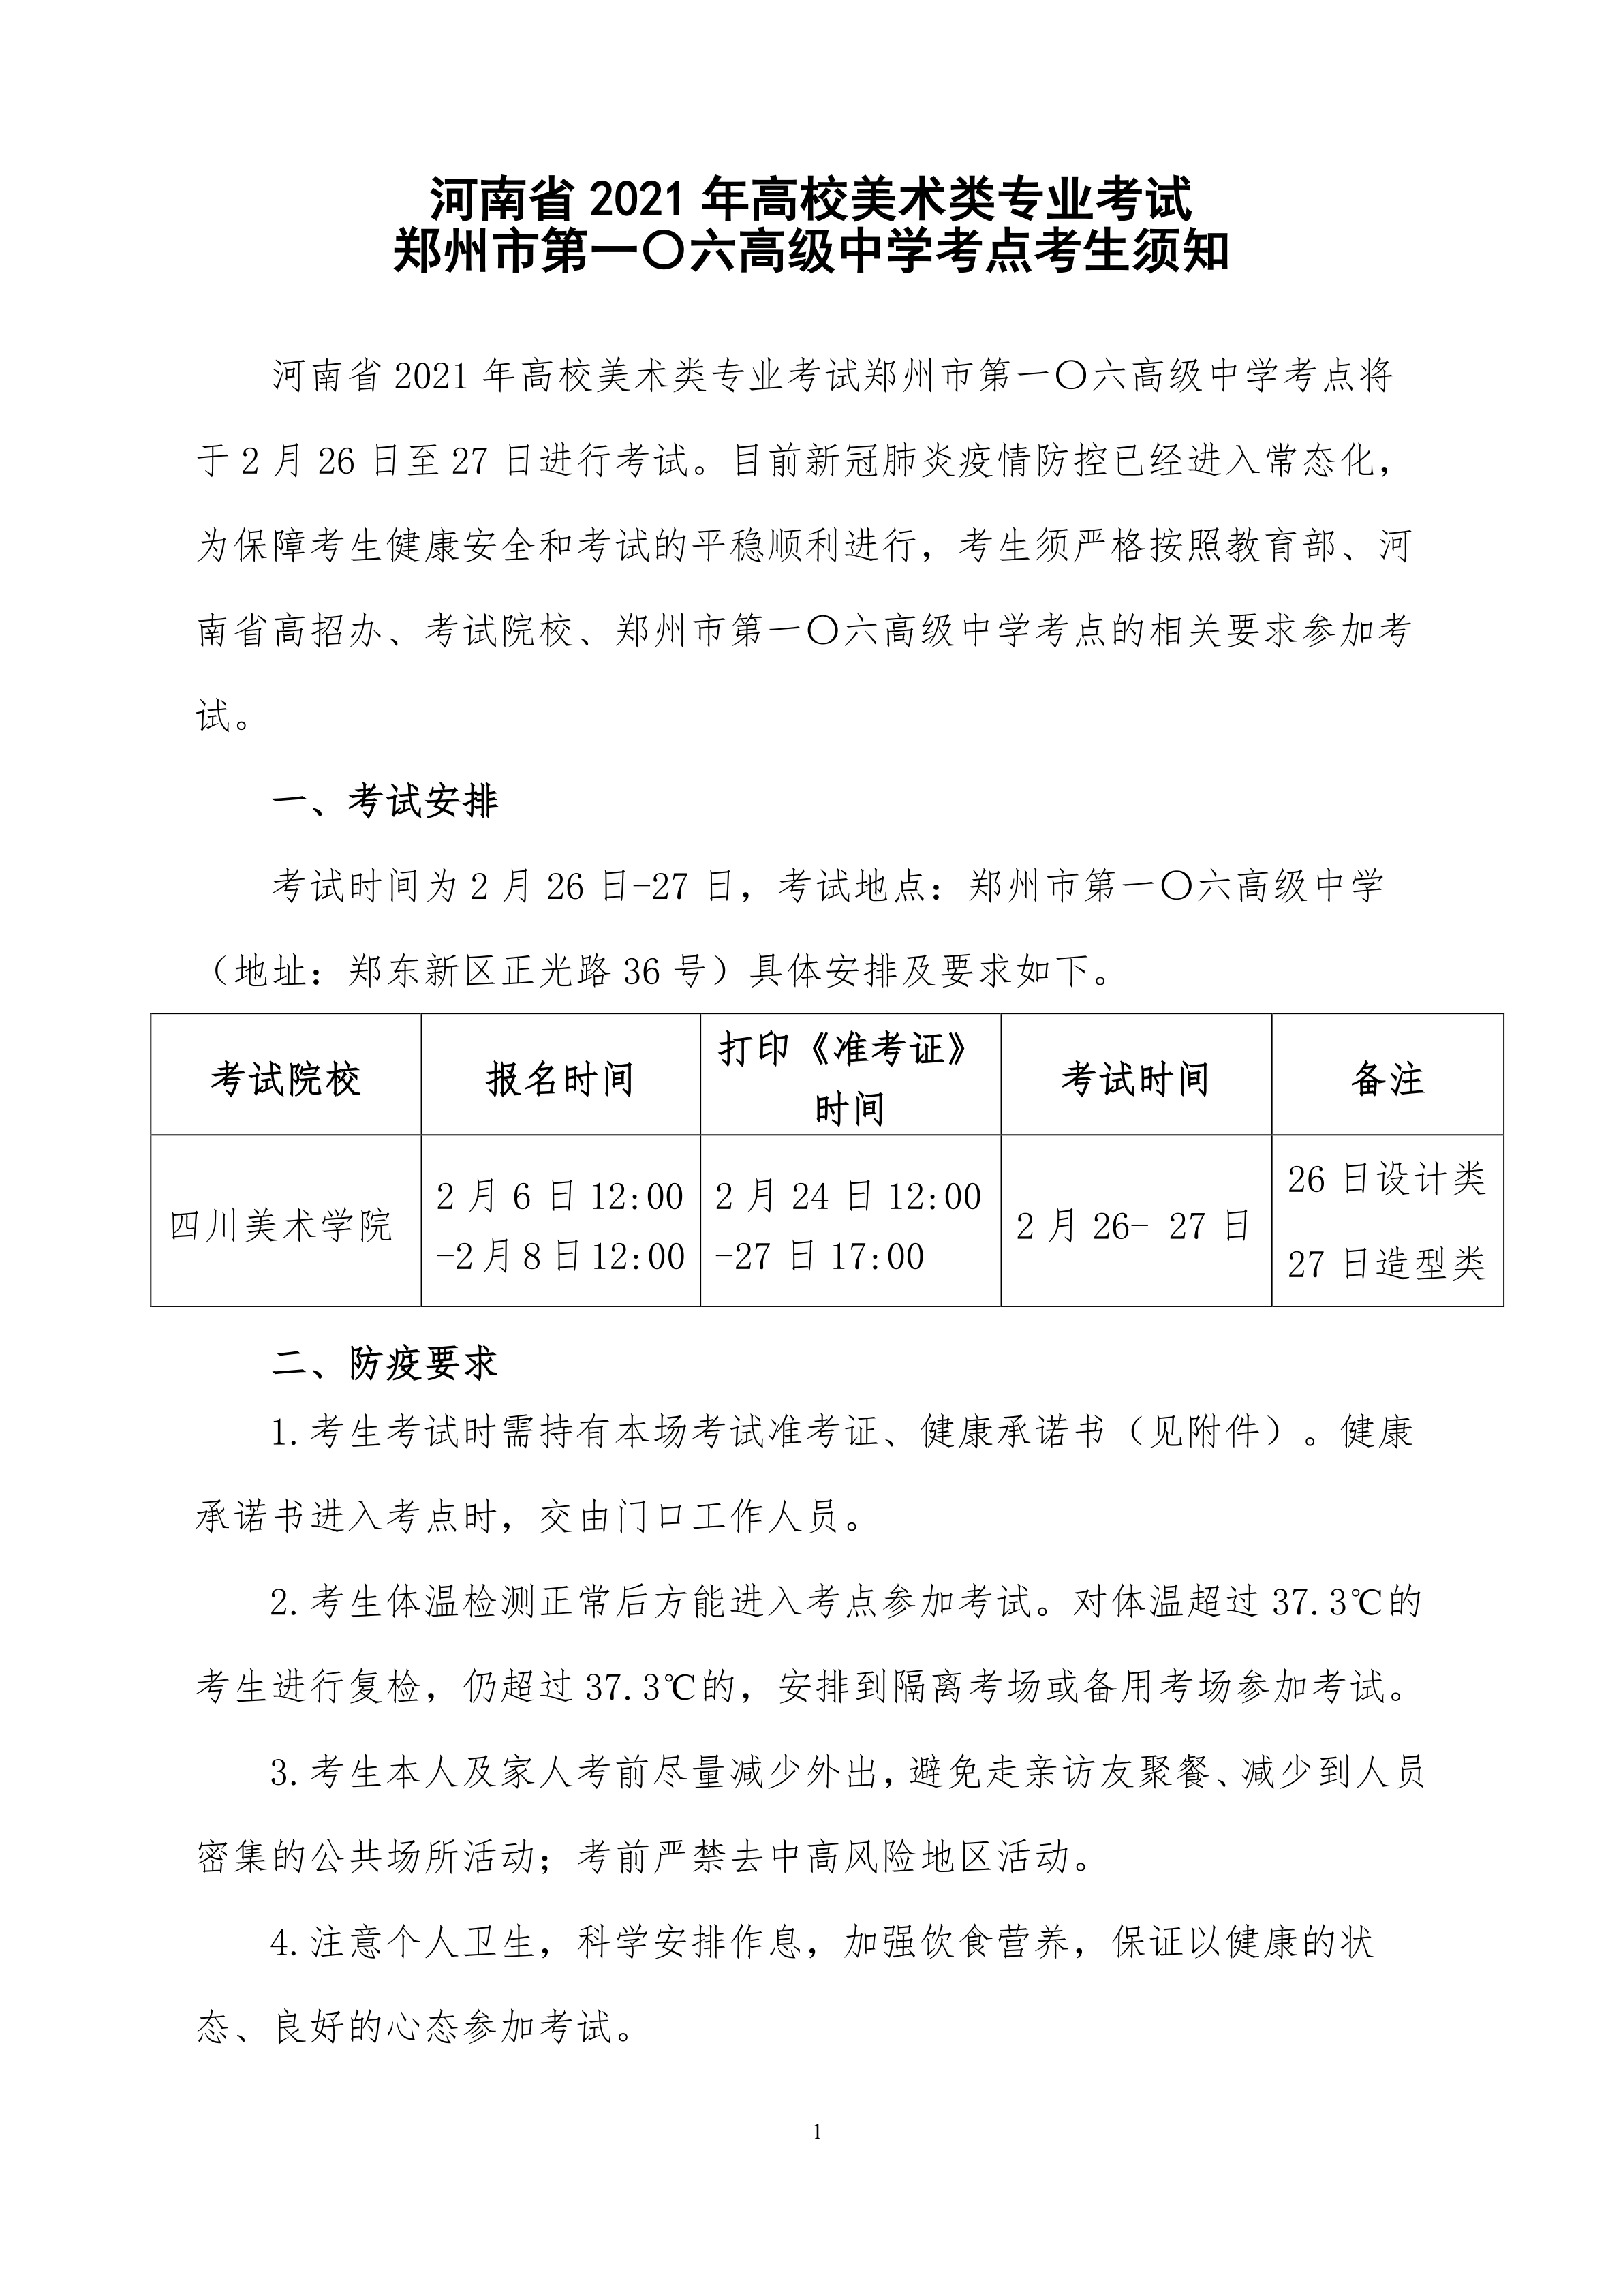 附件三：河南省2021年高校美术类专业考试郑州市第一〇六高级中学考点考生须知_1.png